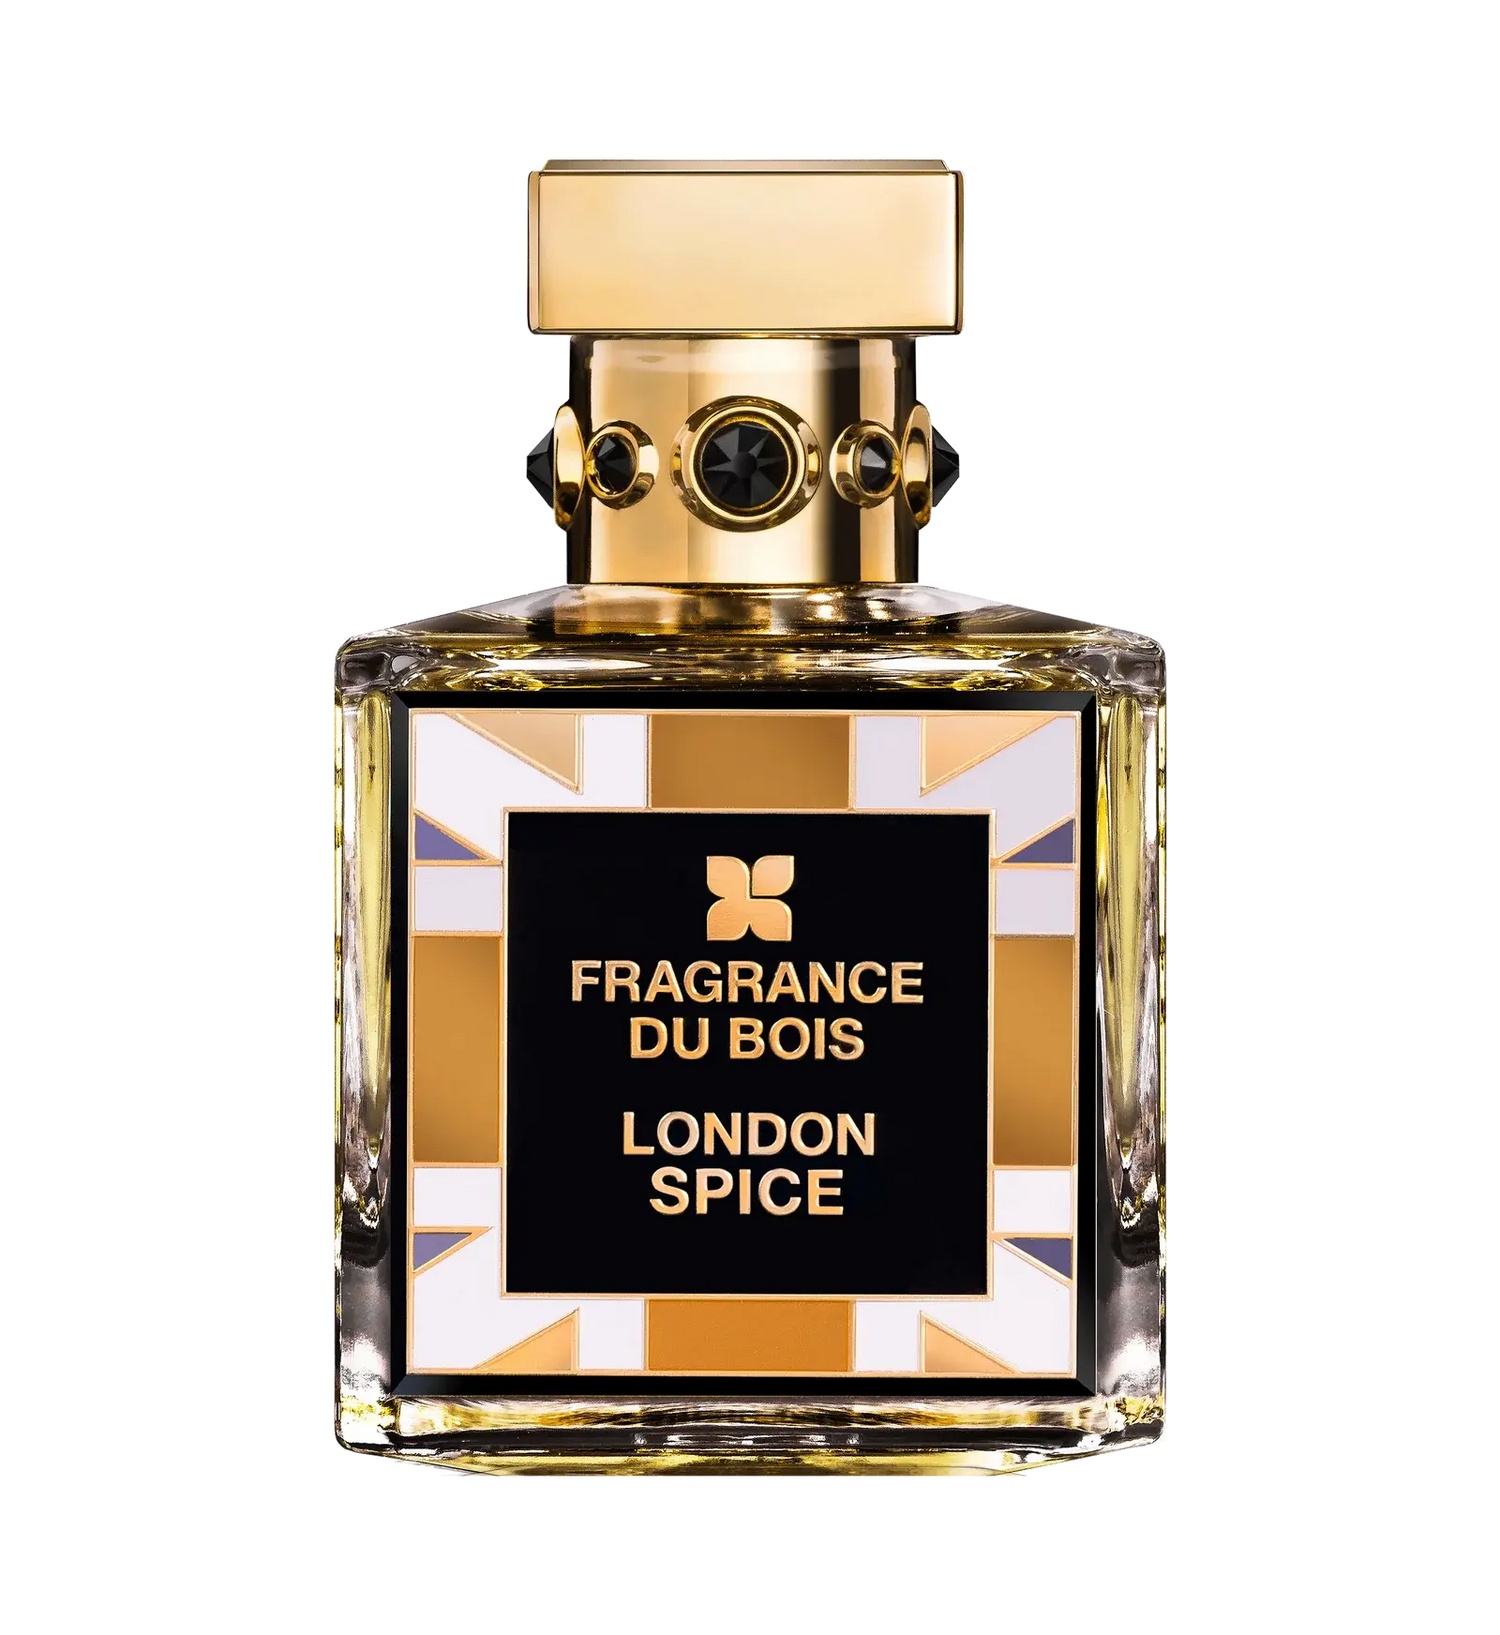 Fragrance du bois London Spice Eau De Parfum - 100 ml